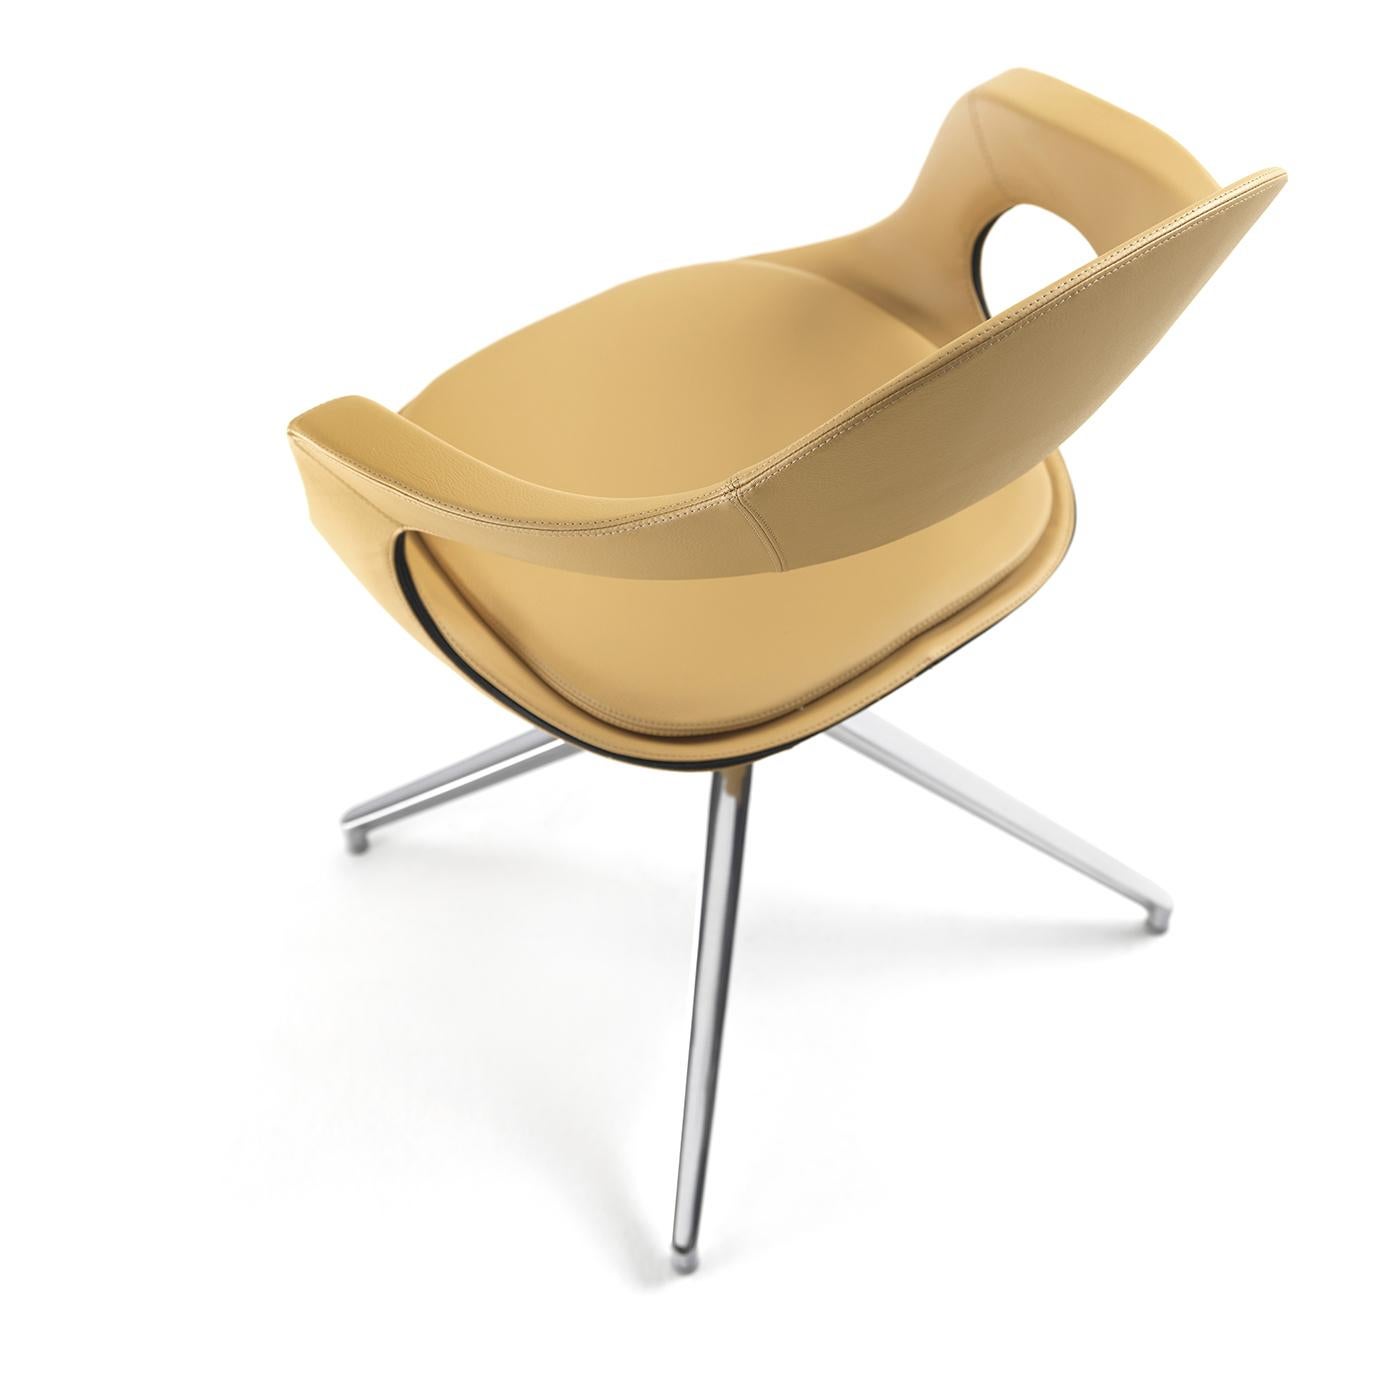 Faisant partie de la collection de bagues françaises de Stefano Bigi, cette chaise pivotante est attrayante, sophistiquée et extrêmement confortable. Sa structure en acier repose sur une base à tréteaux chromés et est recouverte de cuir souple de